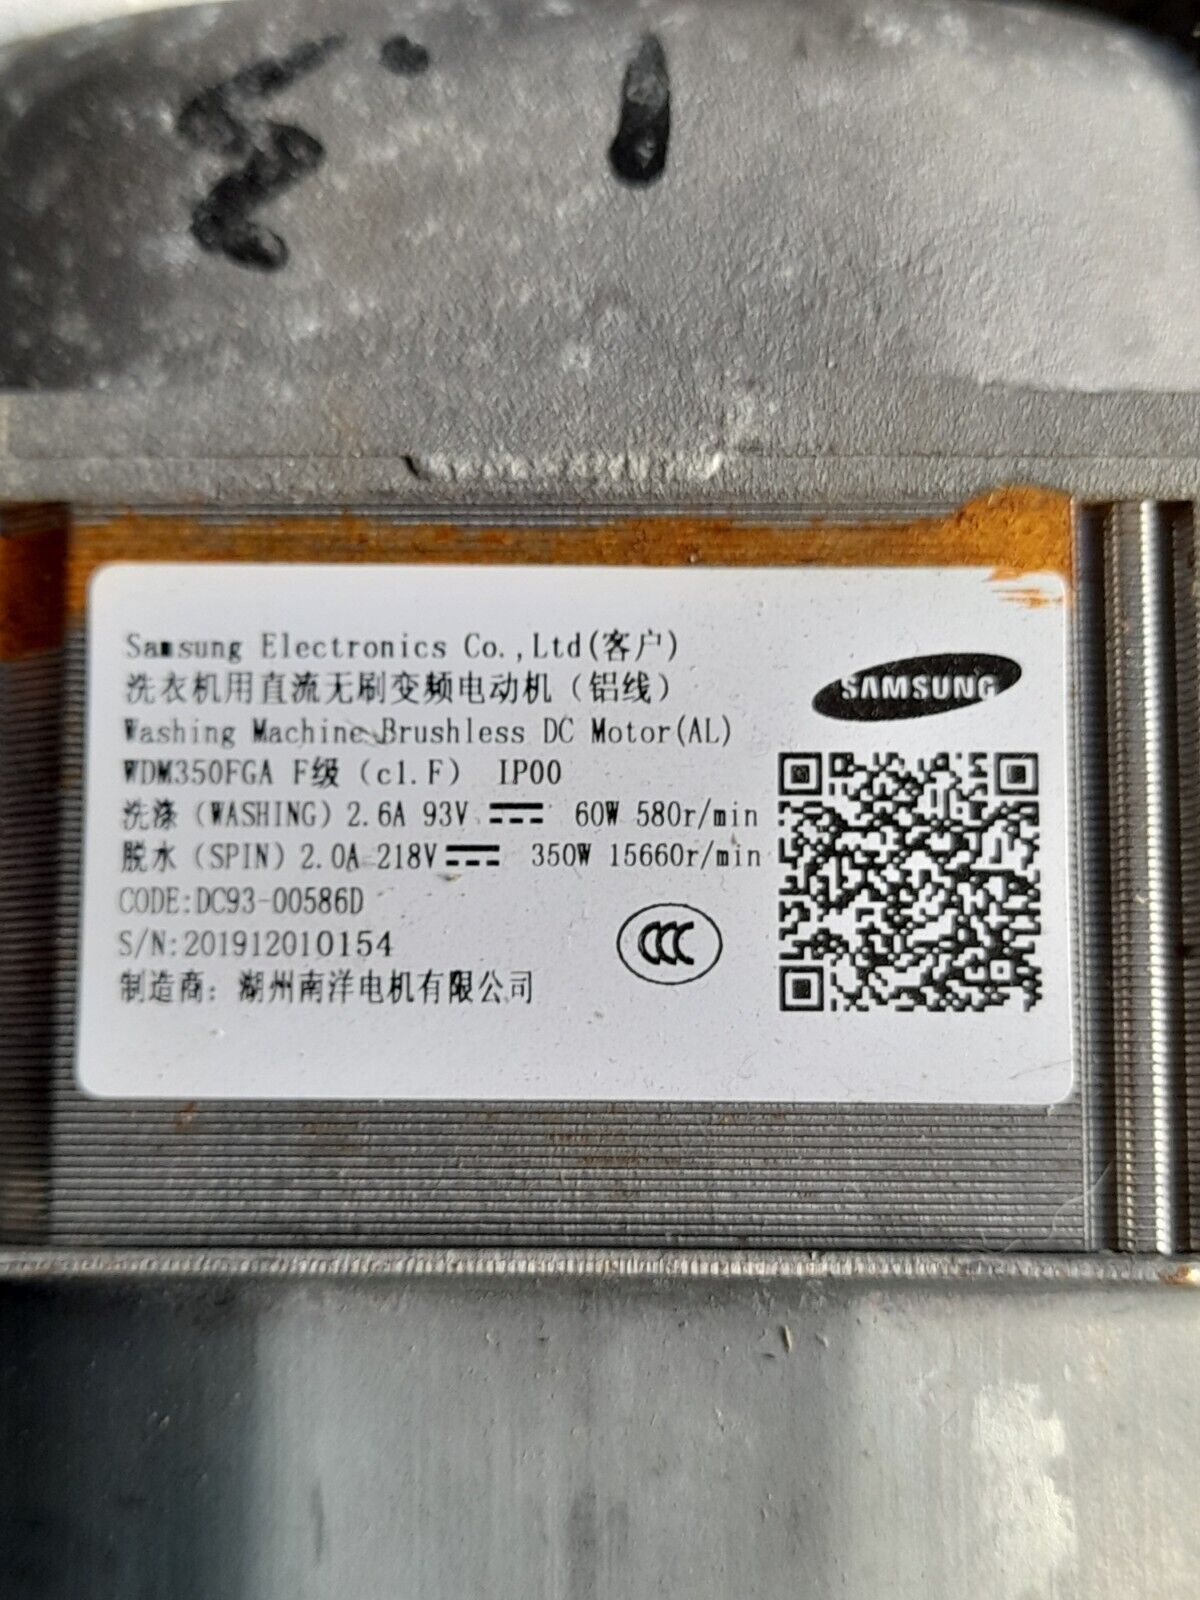 Samsung Washer / Dryer Motor Part Number = DC93-00586D